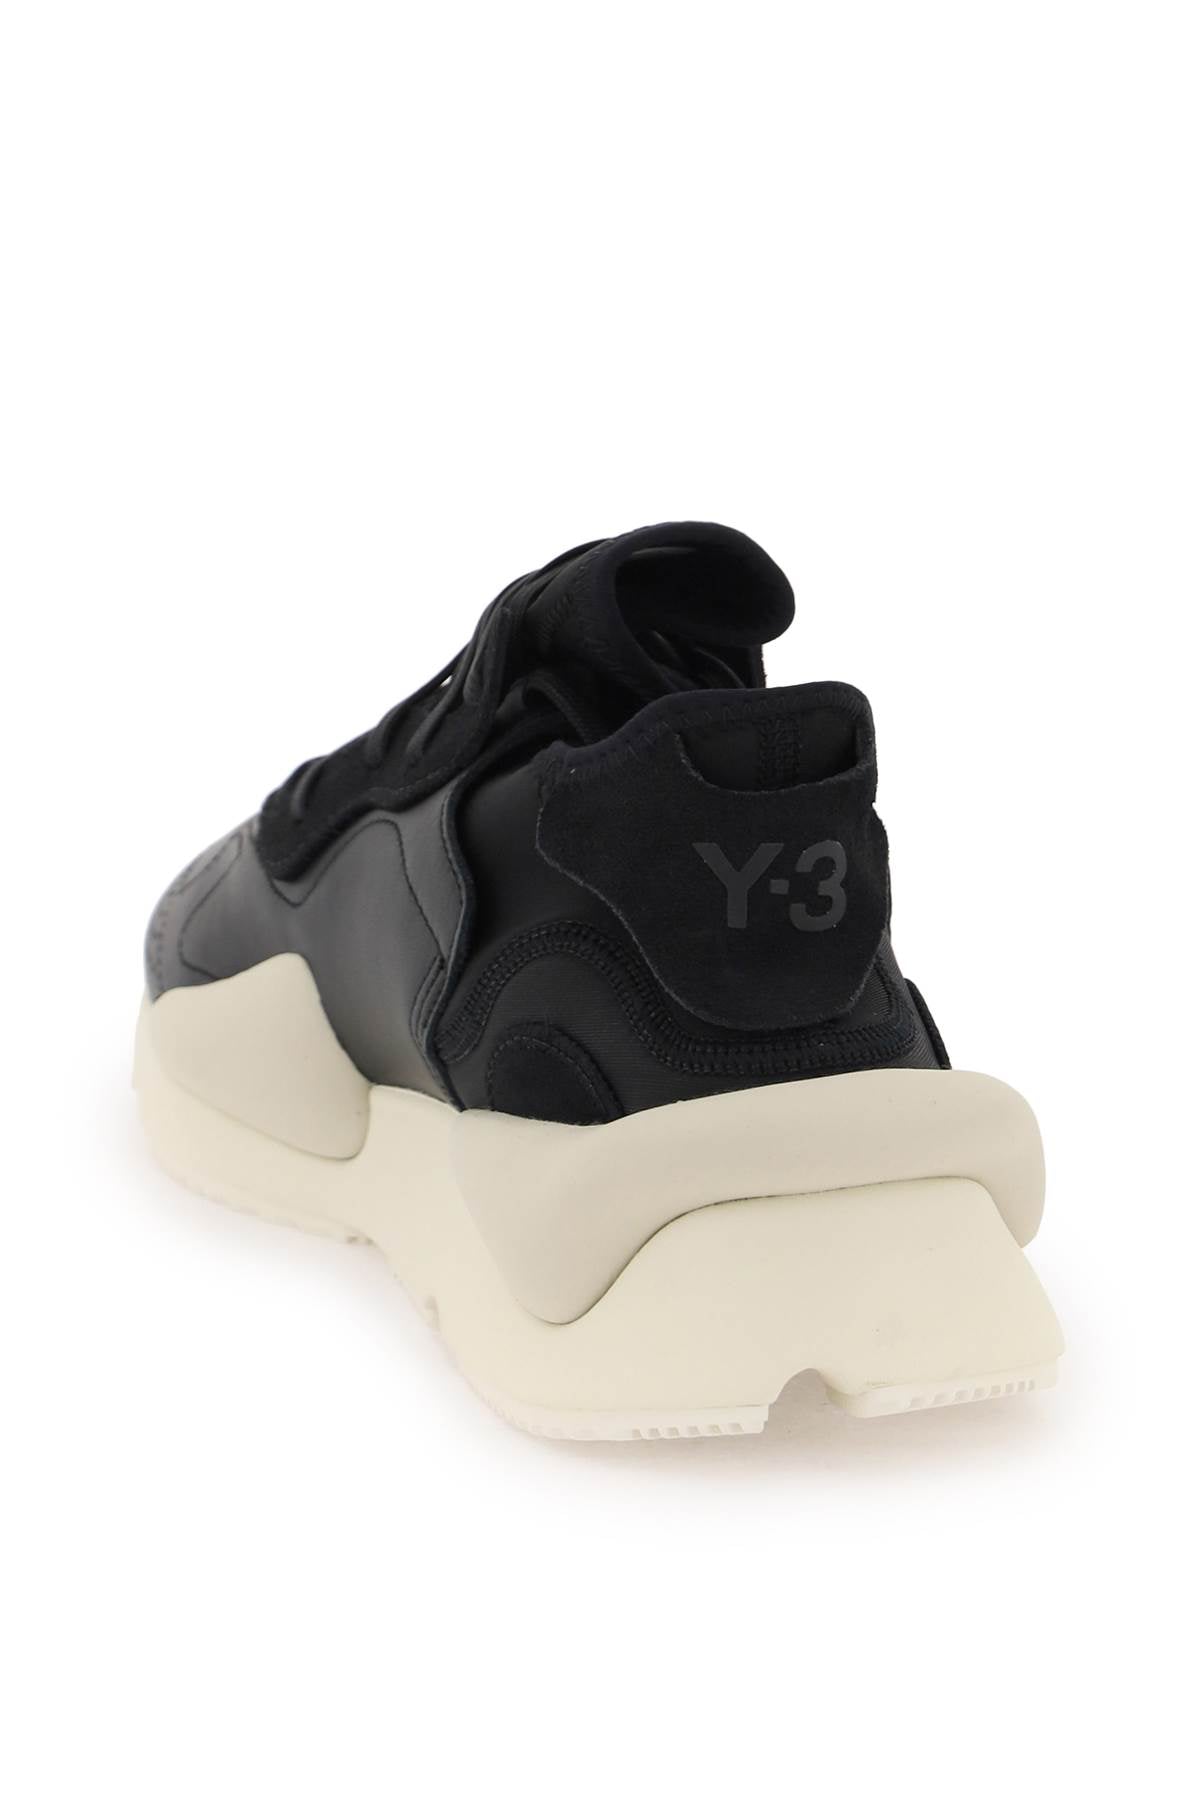 Y-3 y-3 kaiwa sneakers-Y-3-Urbanheer